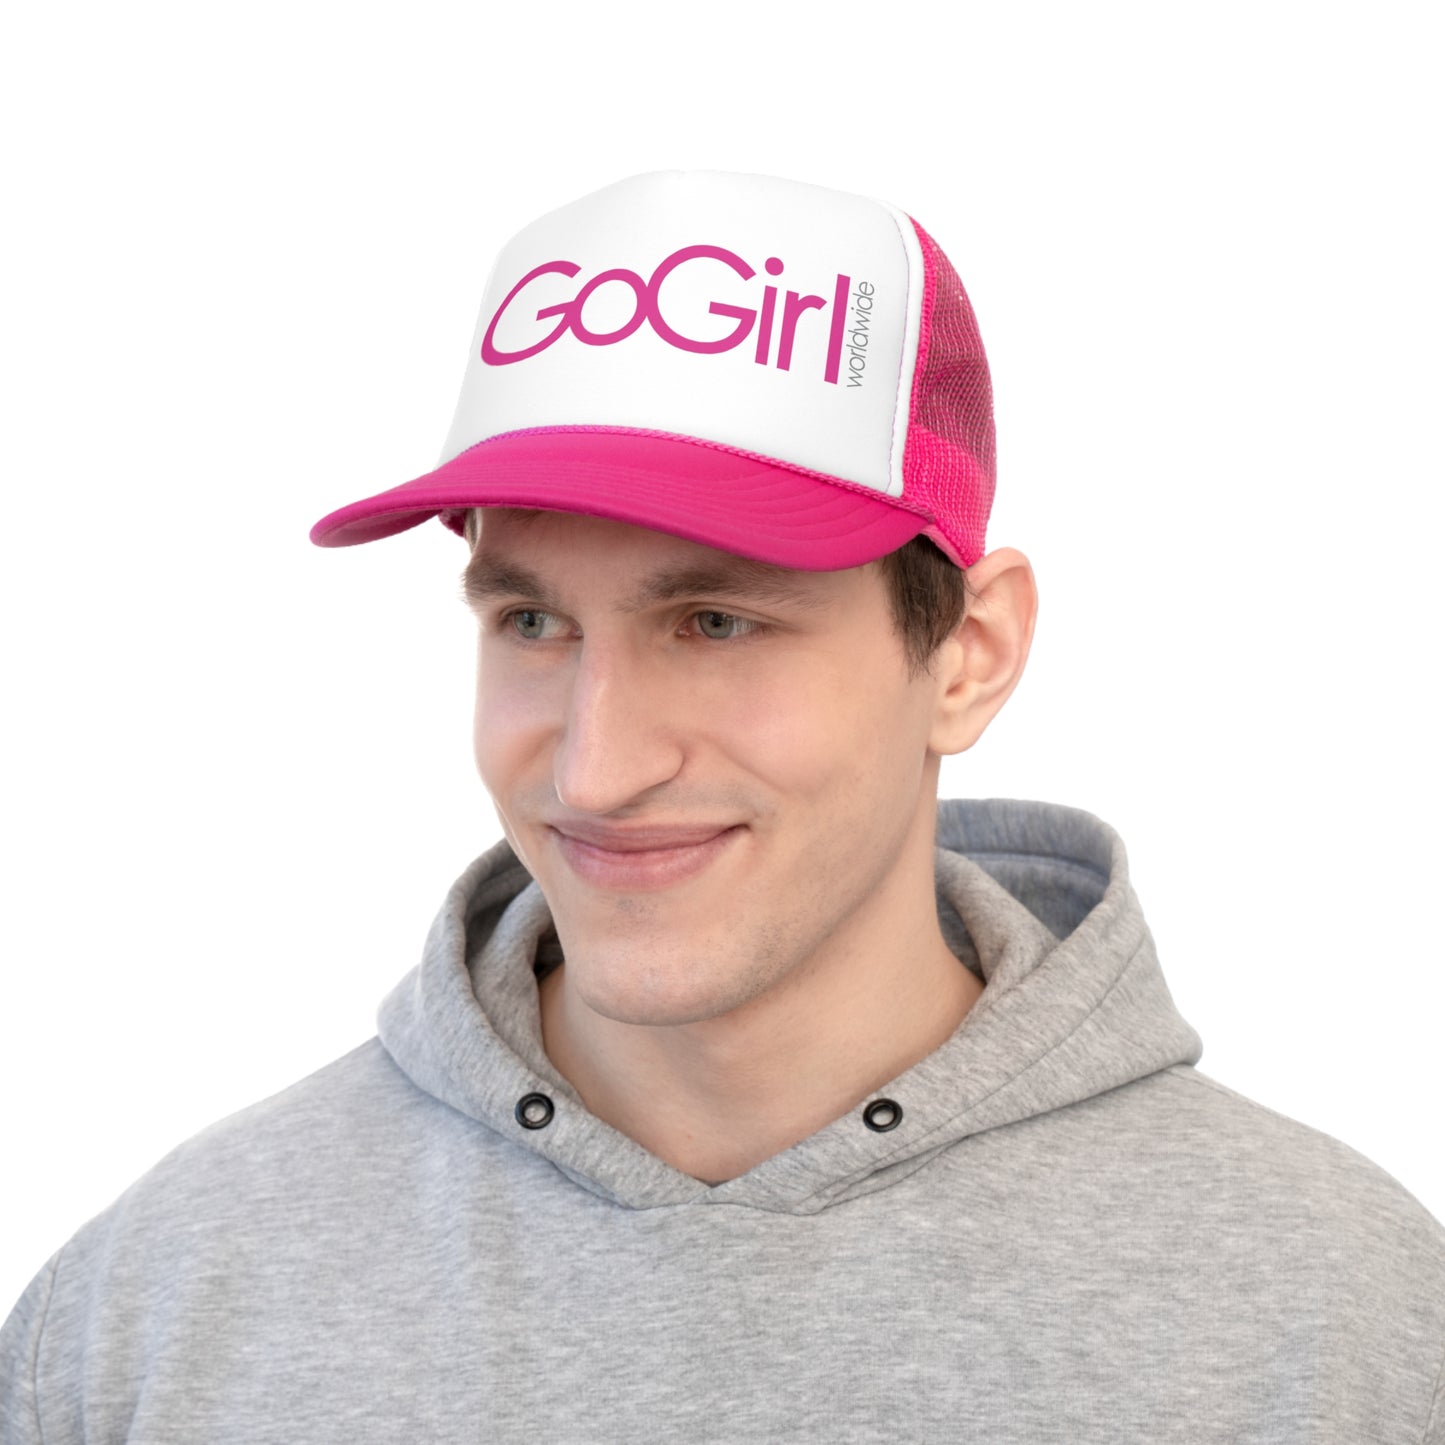 GoGirl Trucker Hat - Pink